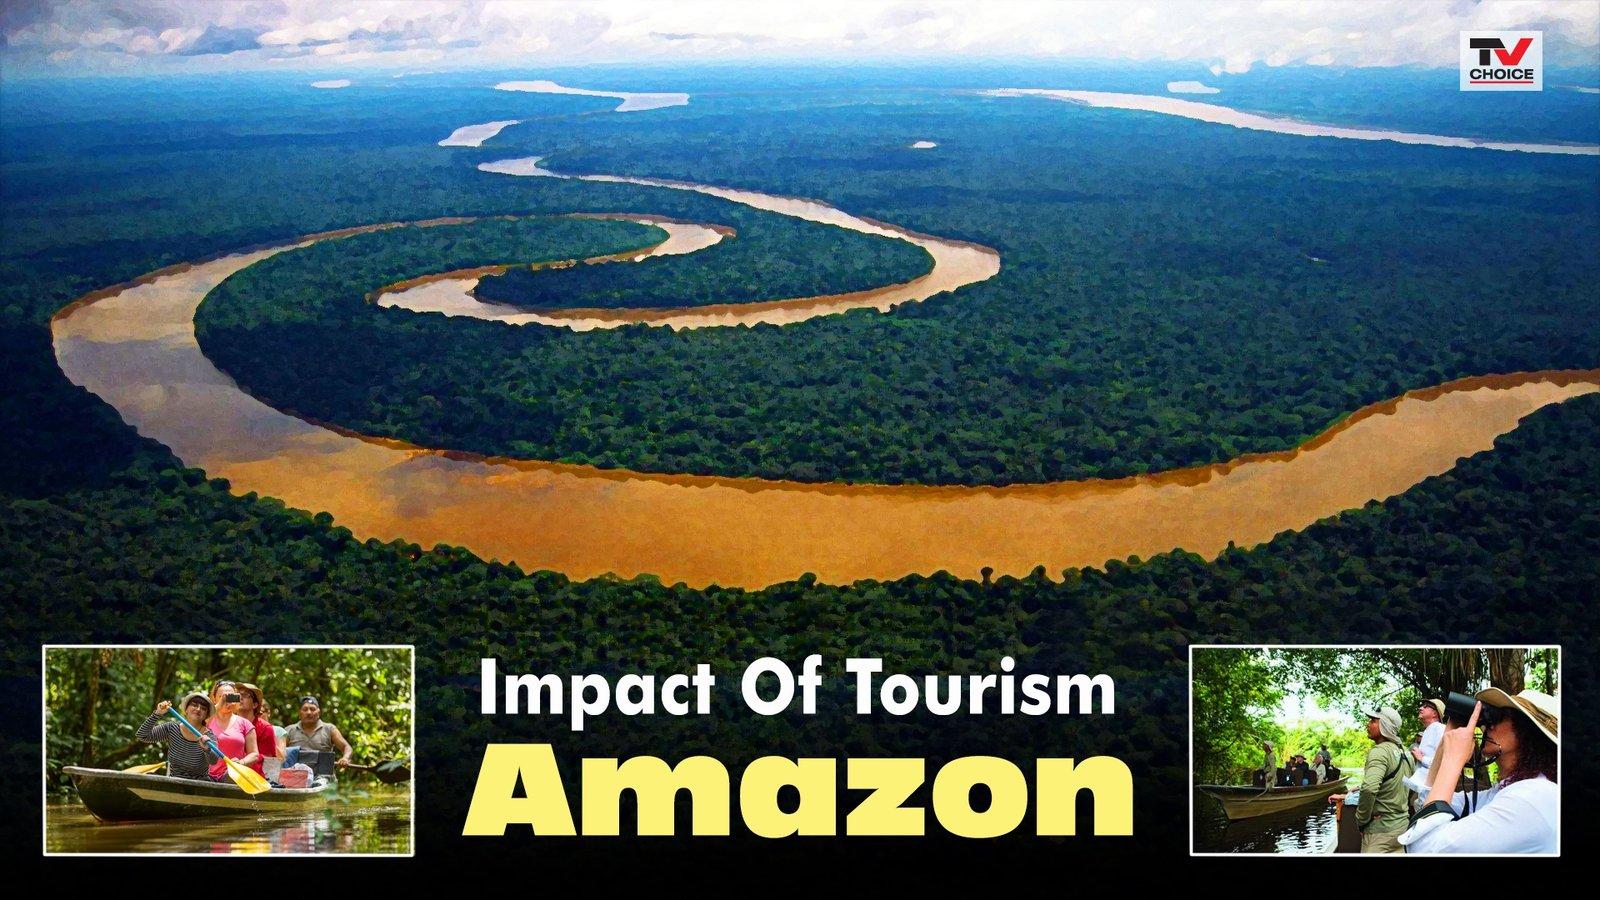 Impact of Tourism: Amazon